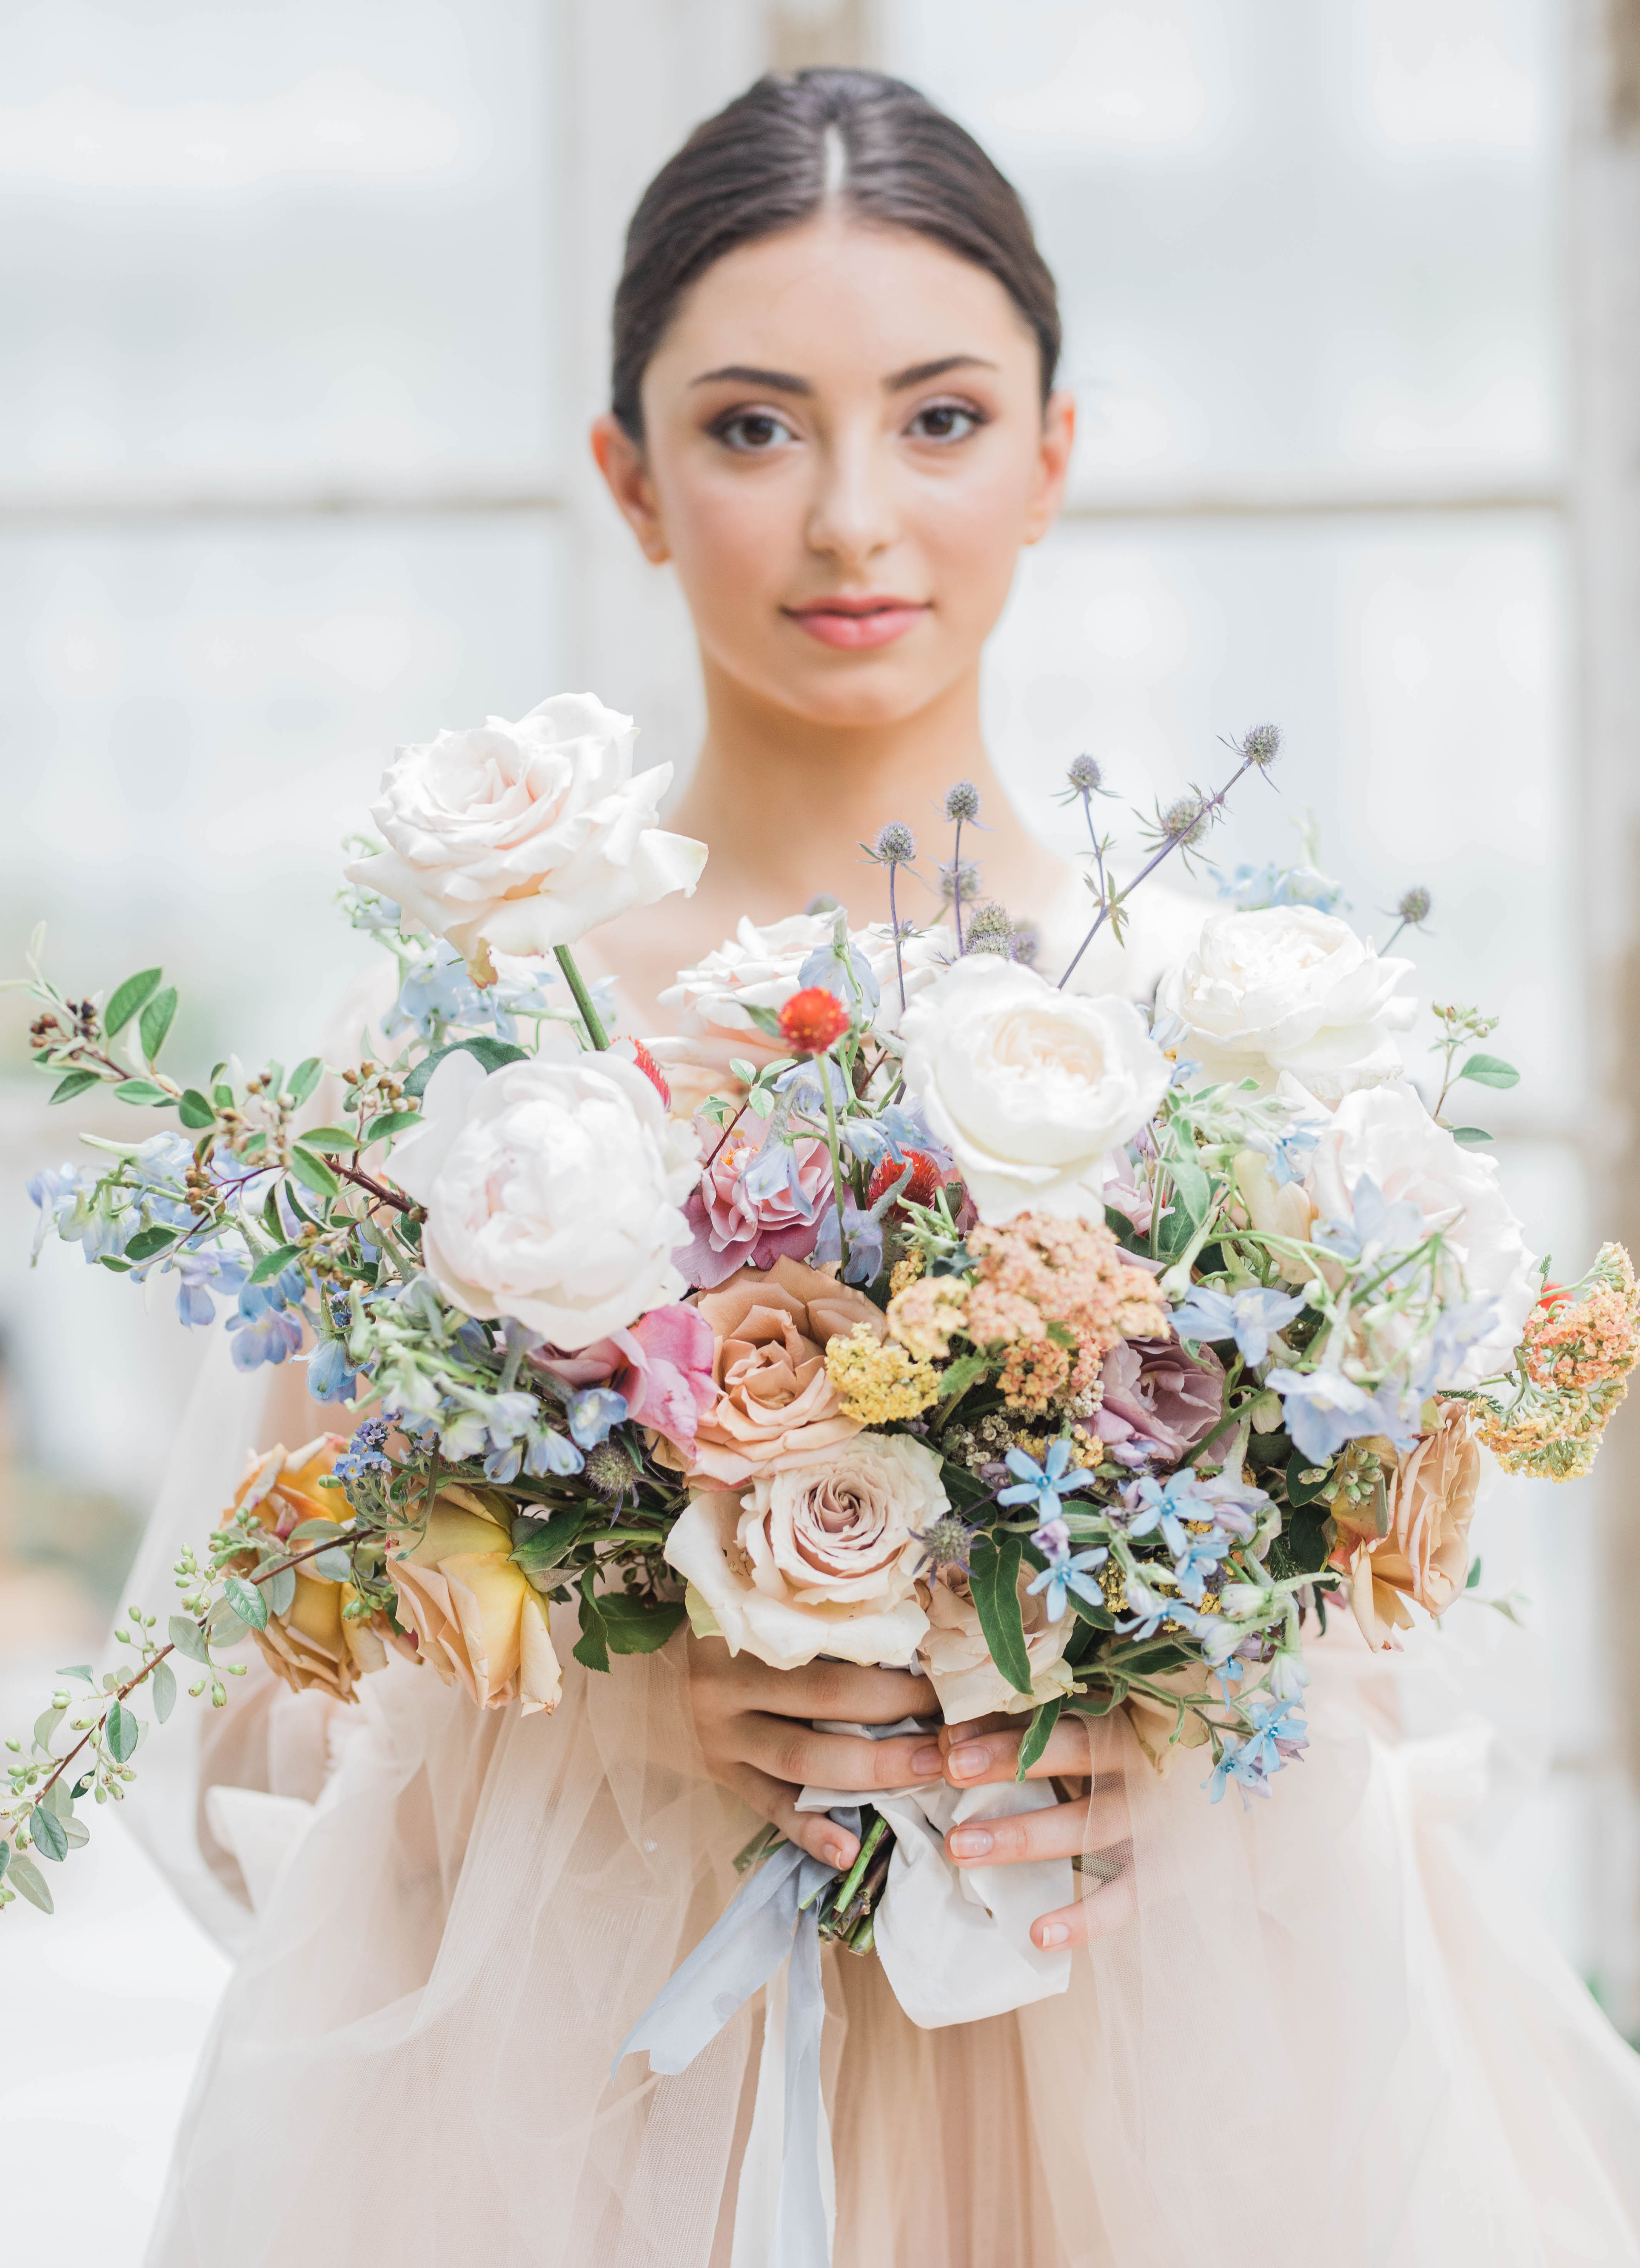 A bride holds a colorful bridal bouquet.